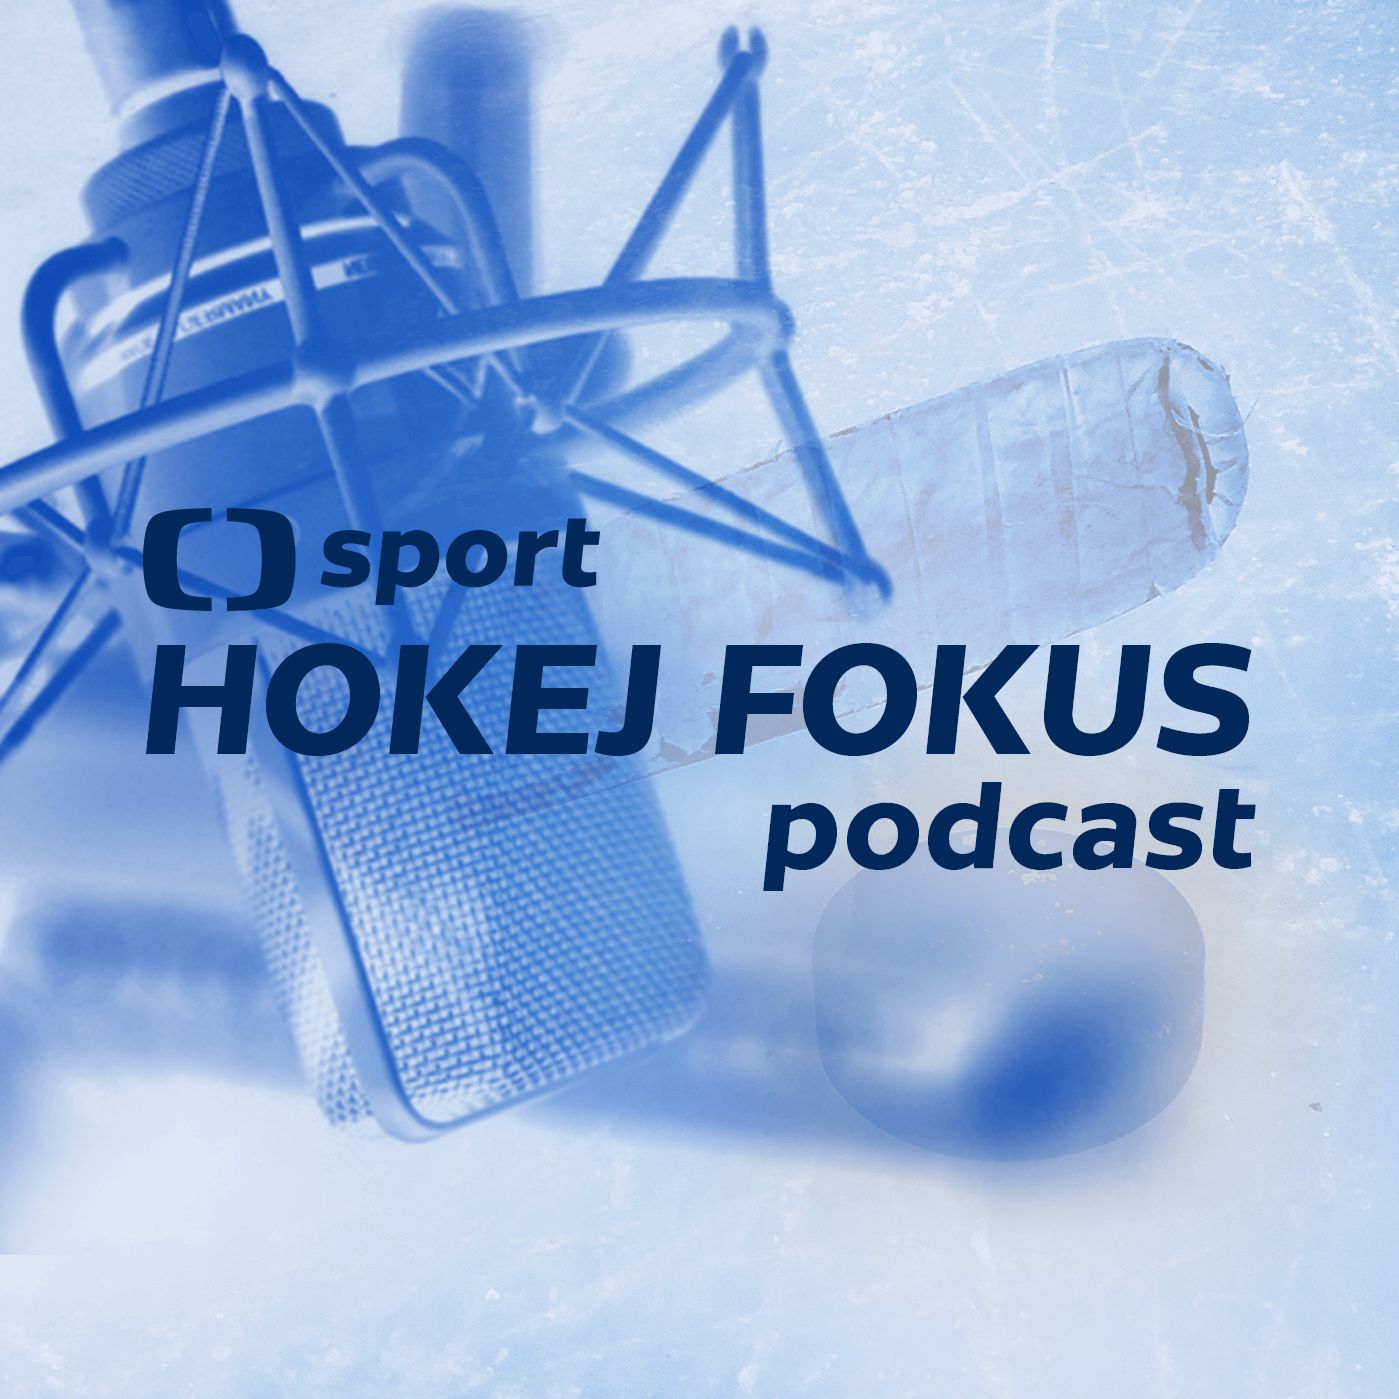 Hokej fokus podcast: Budou české kluby přistupovat k Lize mistrů jako Třinec?